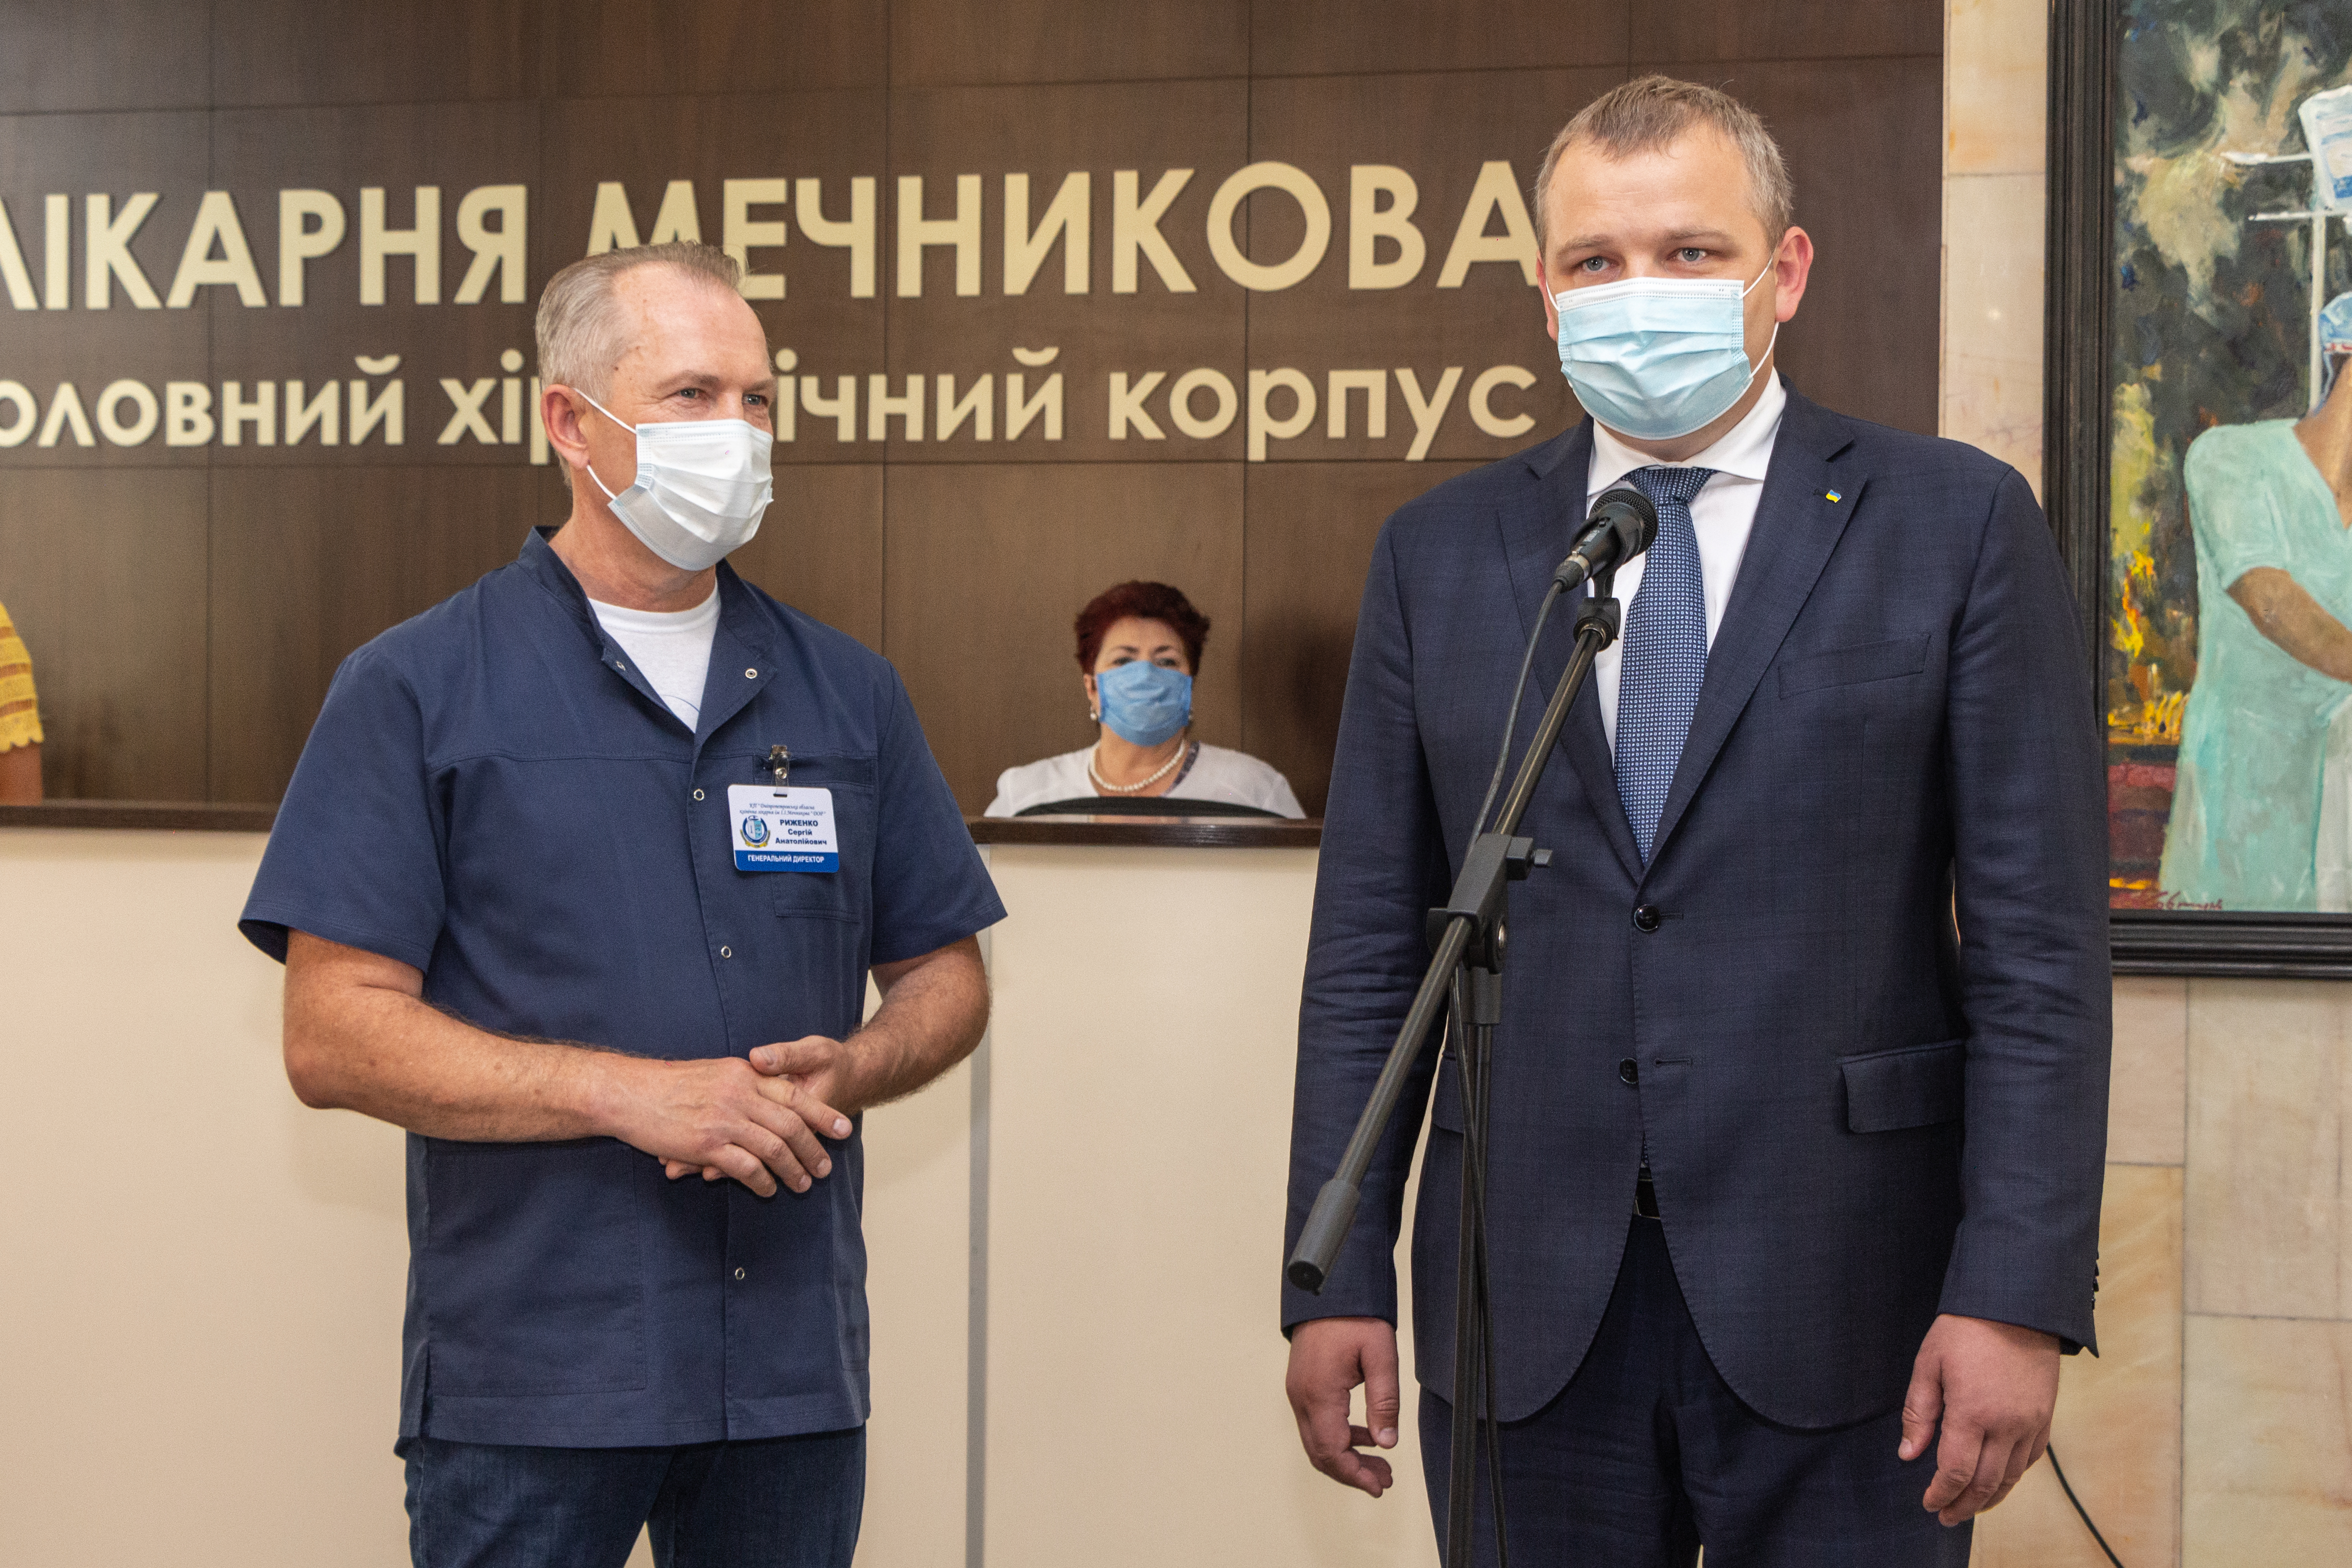 Четверо лікарів ОКБ ім. Мечникова отримали звання «Заслужений лікар України»